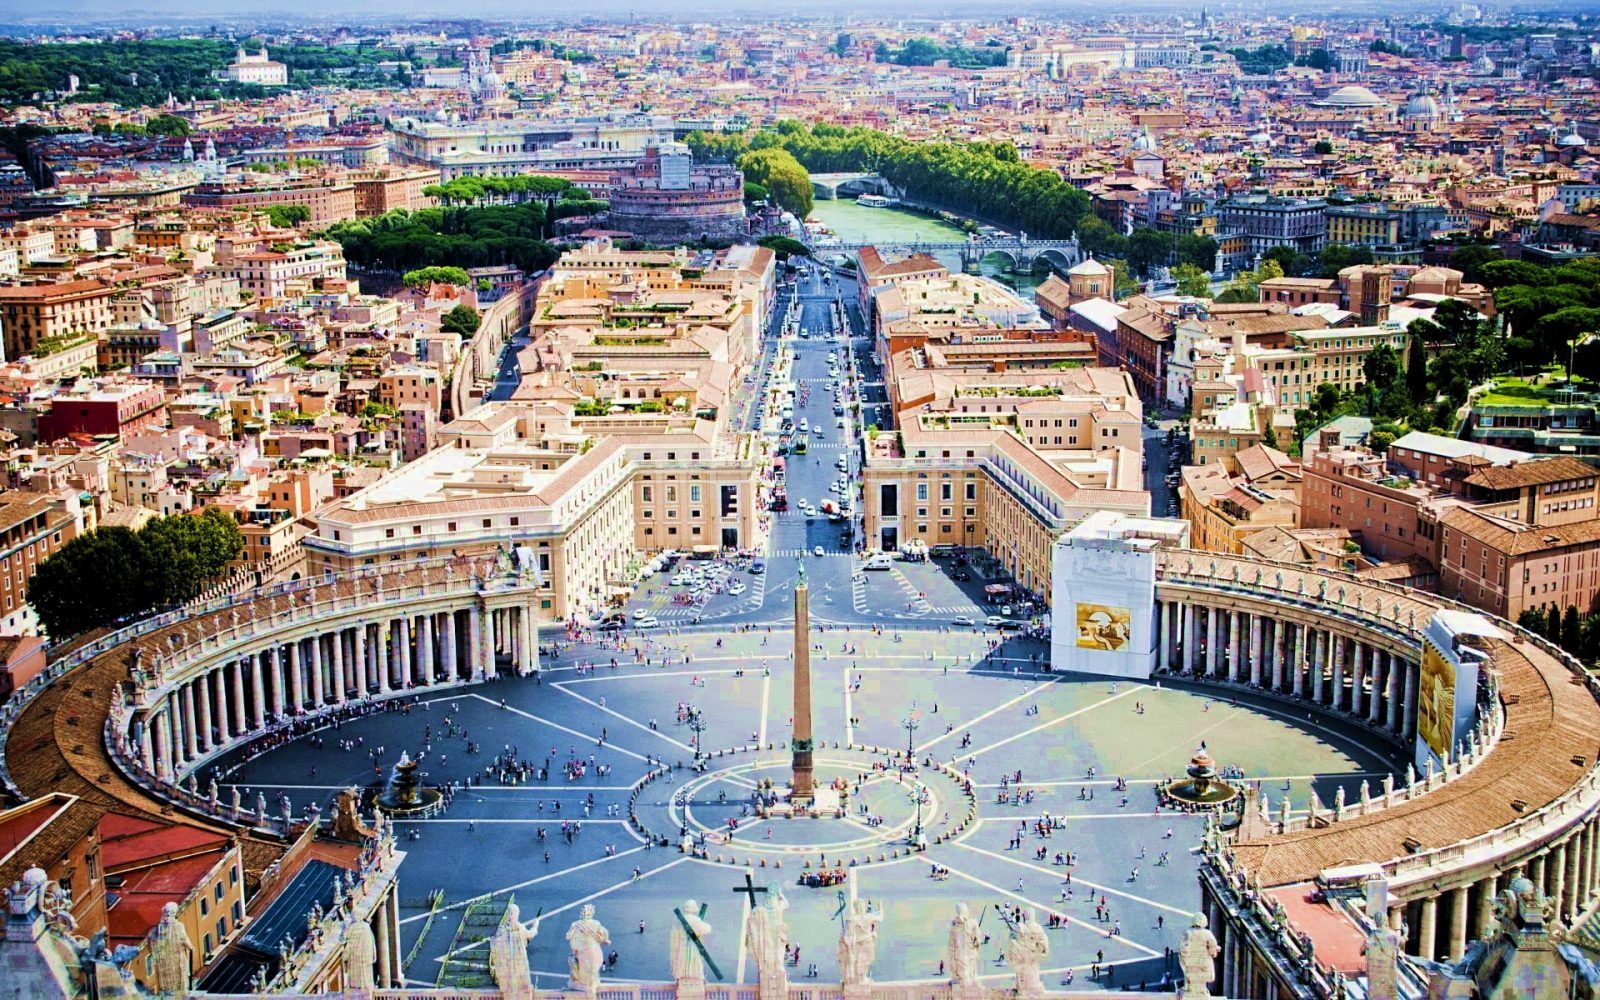 Римские колокола... Римский Форум — Форум в центре Древнего Рима, вместе с прилегающими зданиями. Первоначально на нём размещался рынок, позже он включил в себя комиций, курию, и приобрёл политические функции…